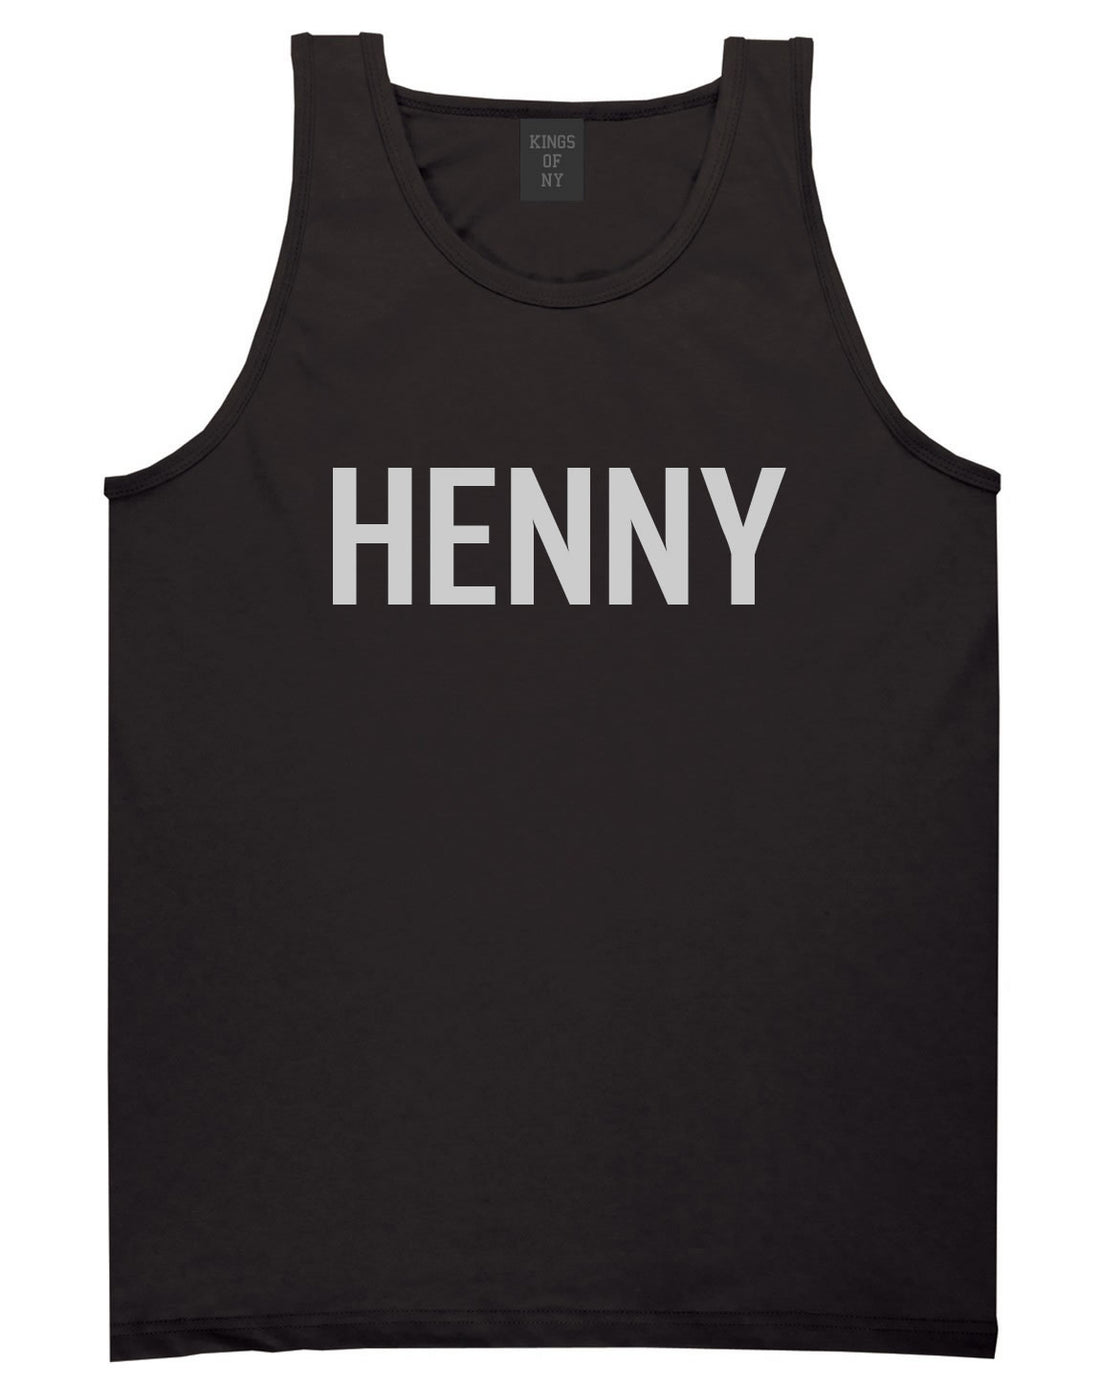 Henny Tank Top by Kings Of NY